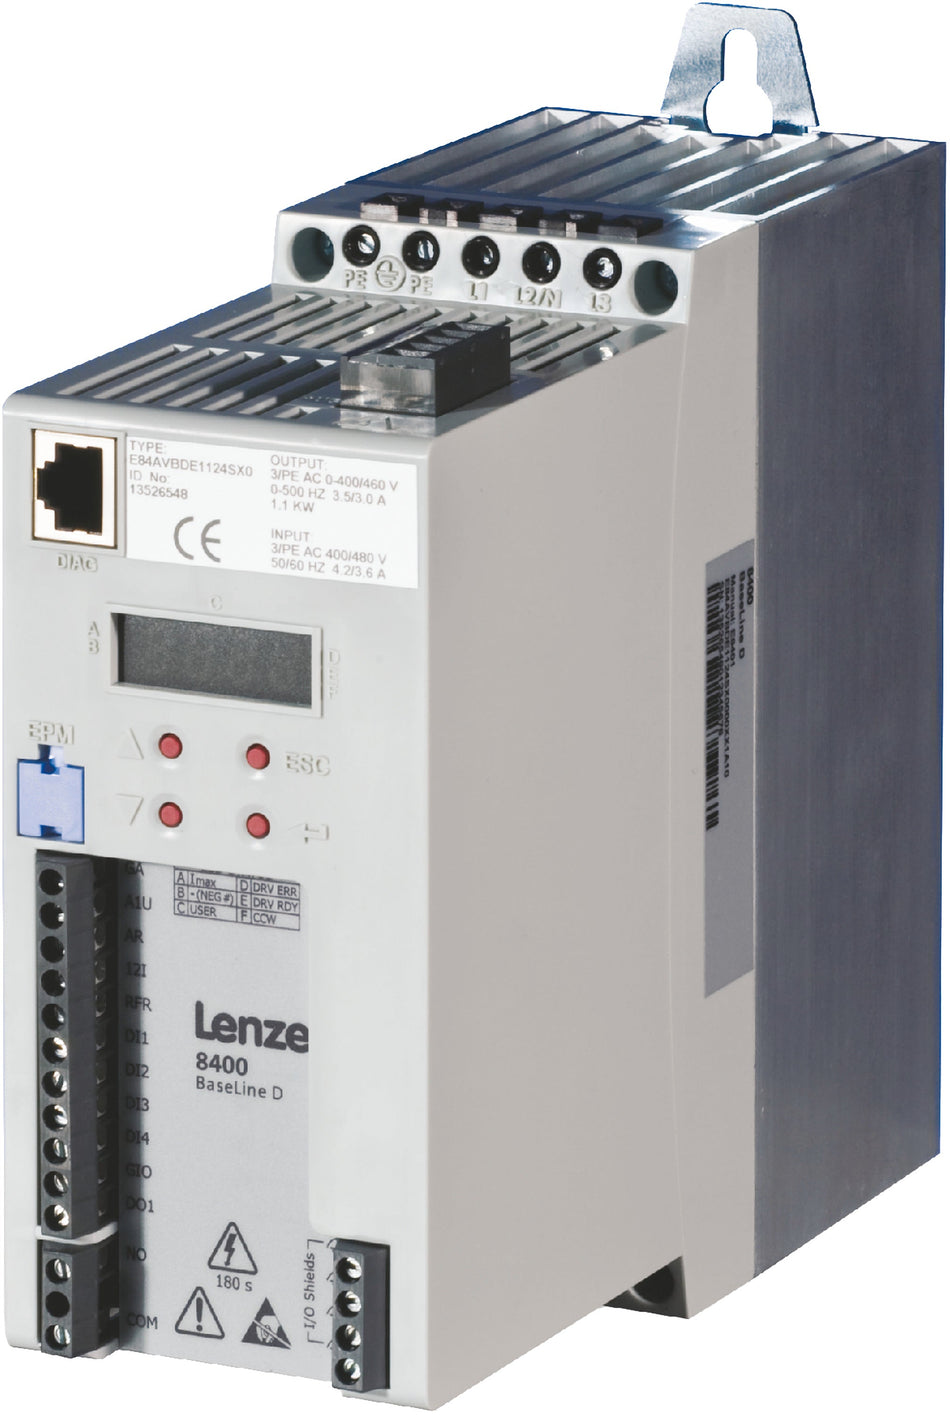 Lenze Inverter Drives 8400 BaseLine -   E84AVBCE2512SX0 0.25 kW